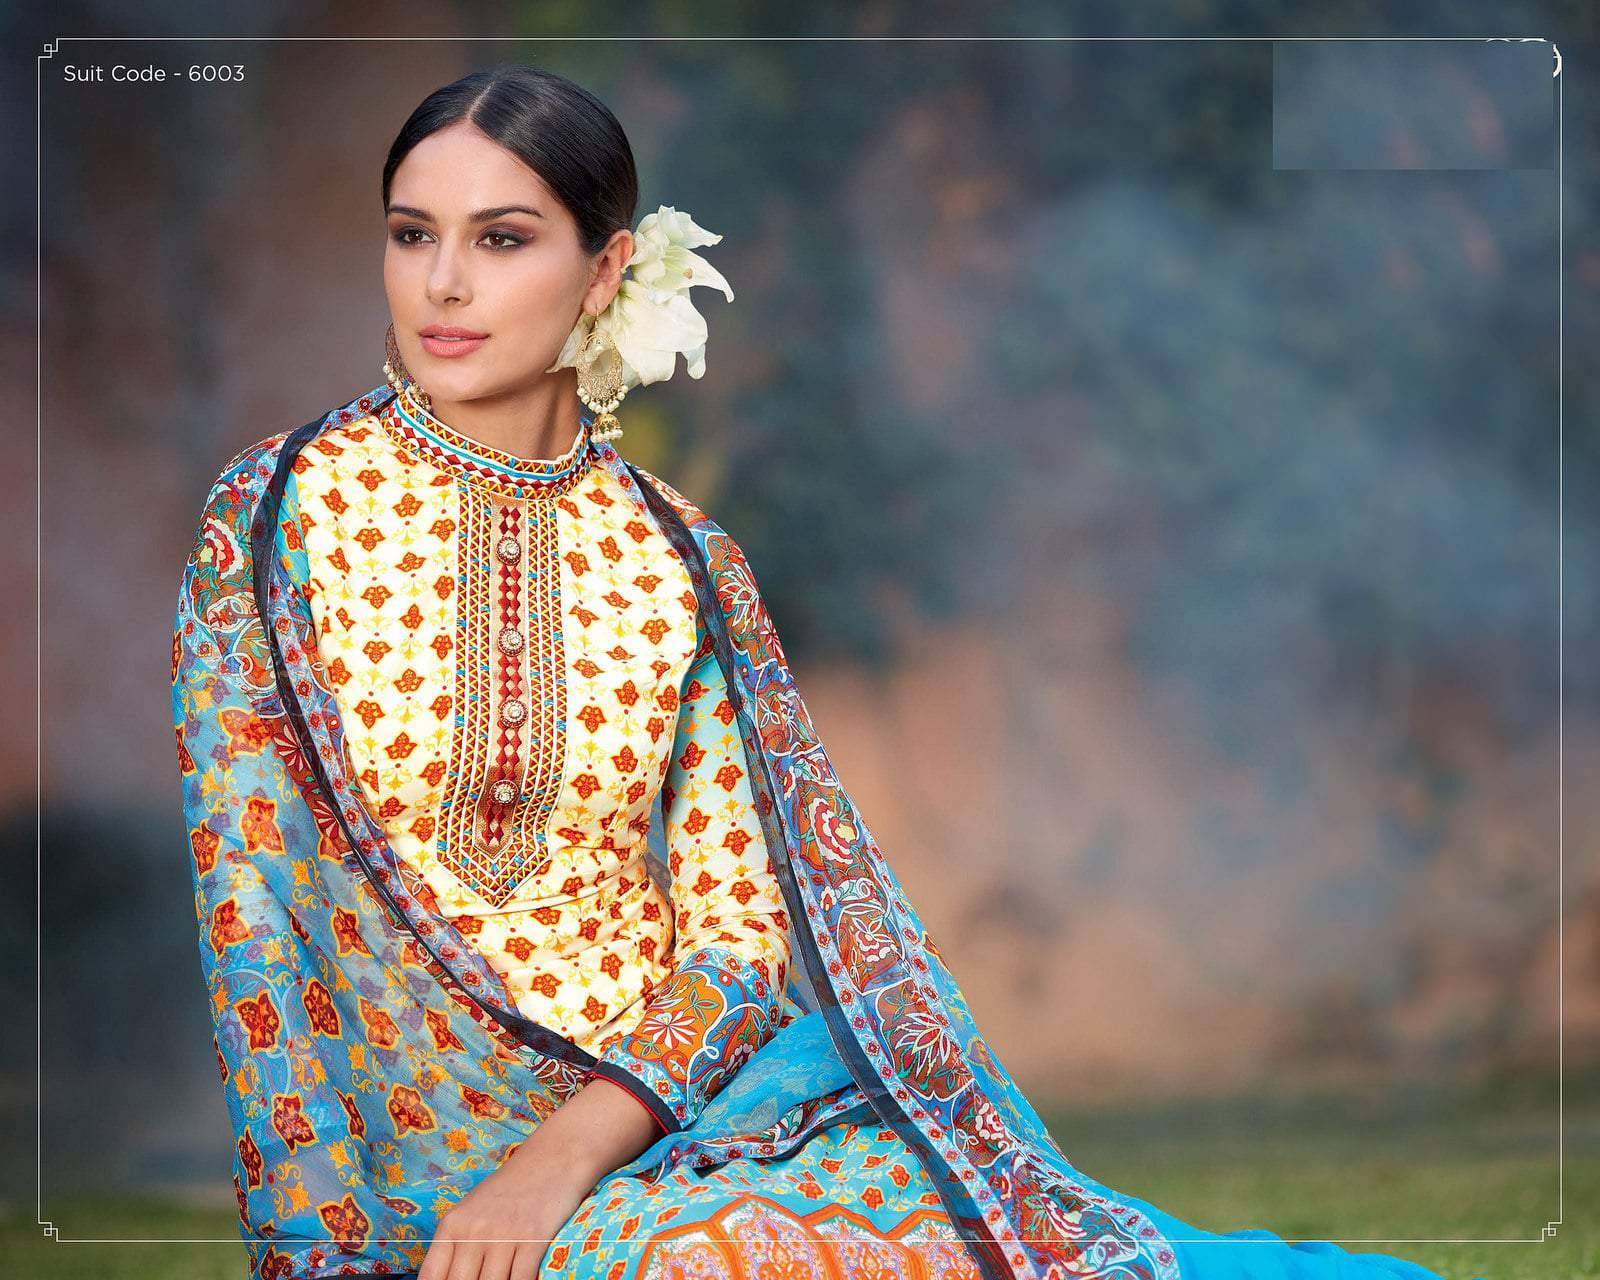 Indian Designer Ladies Suit at Best Price in Surat